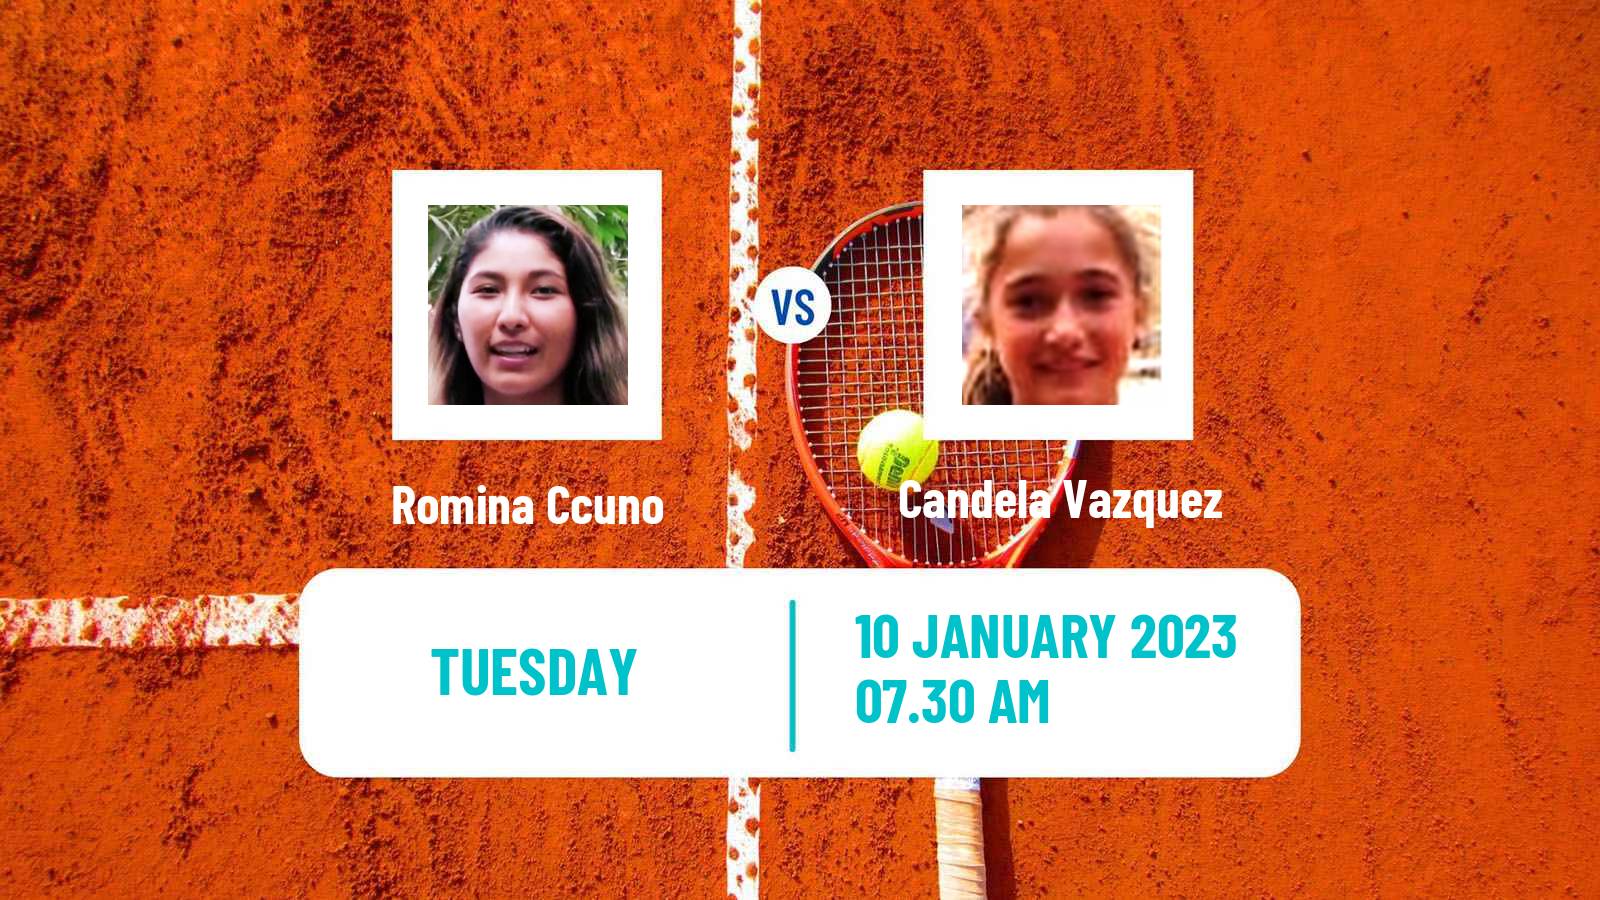 Tennis ITF Tournaments Romina Ccuno - Candela Vazquez